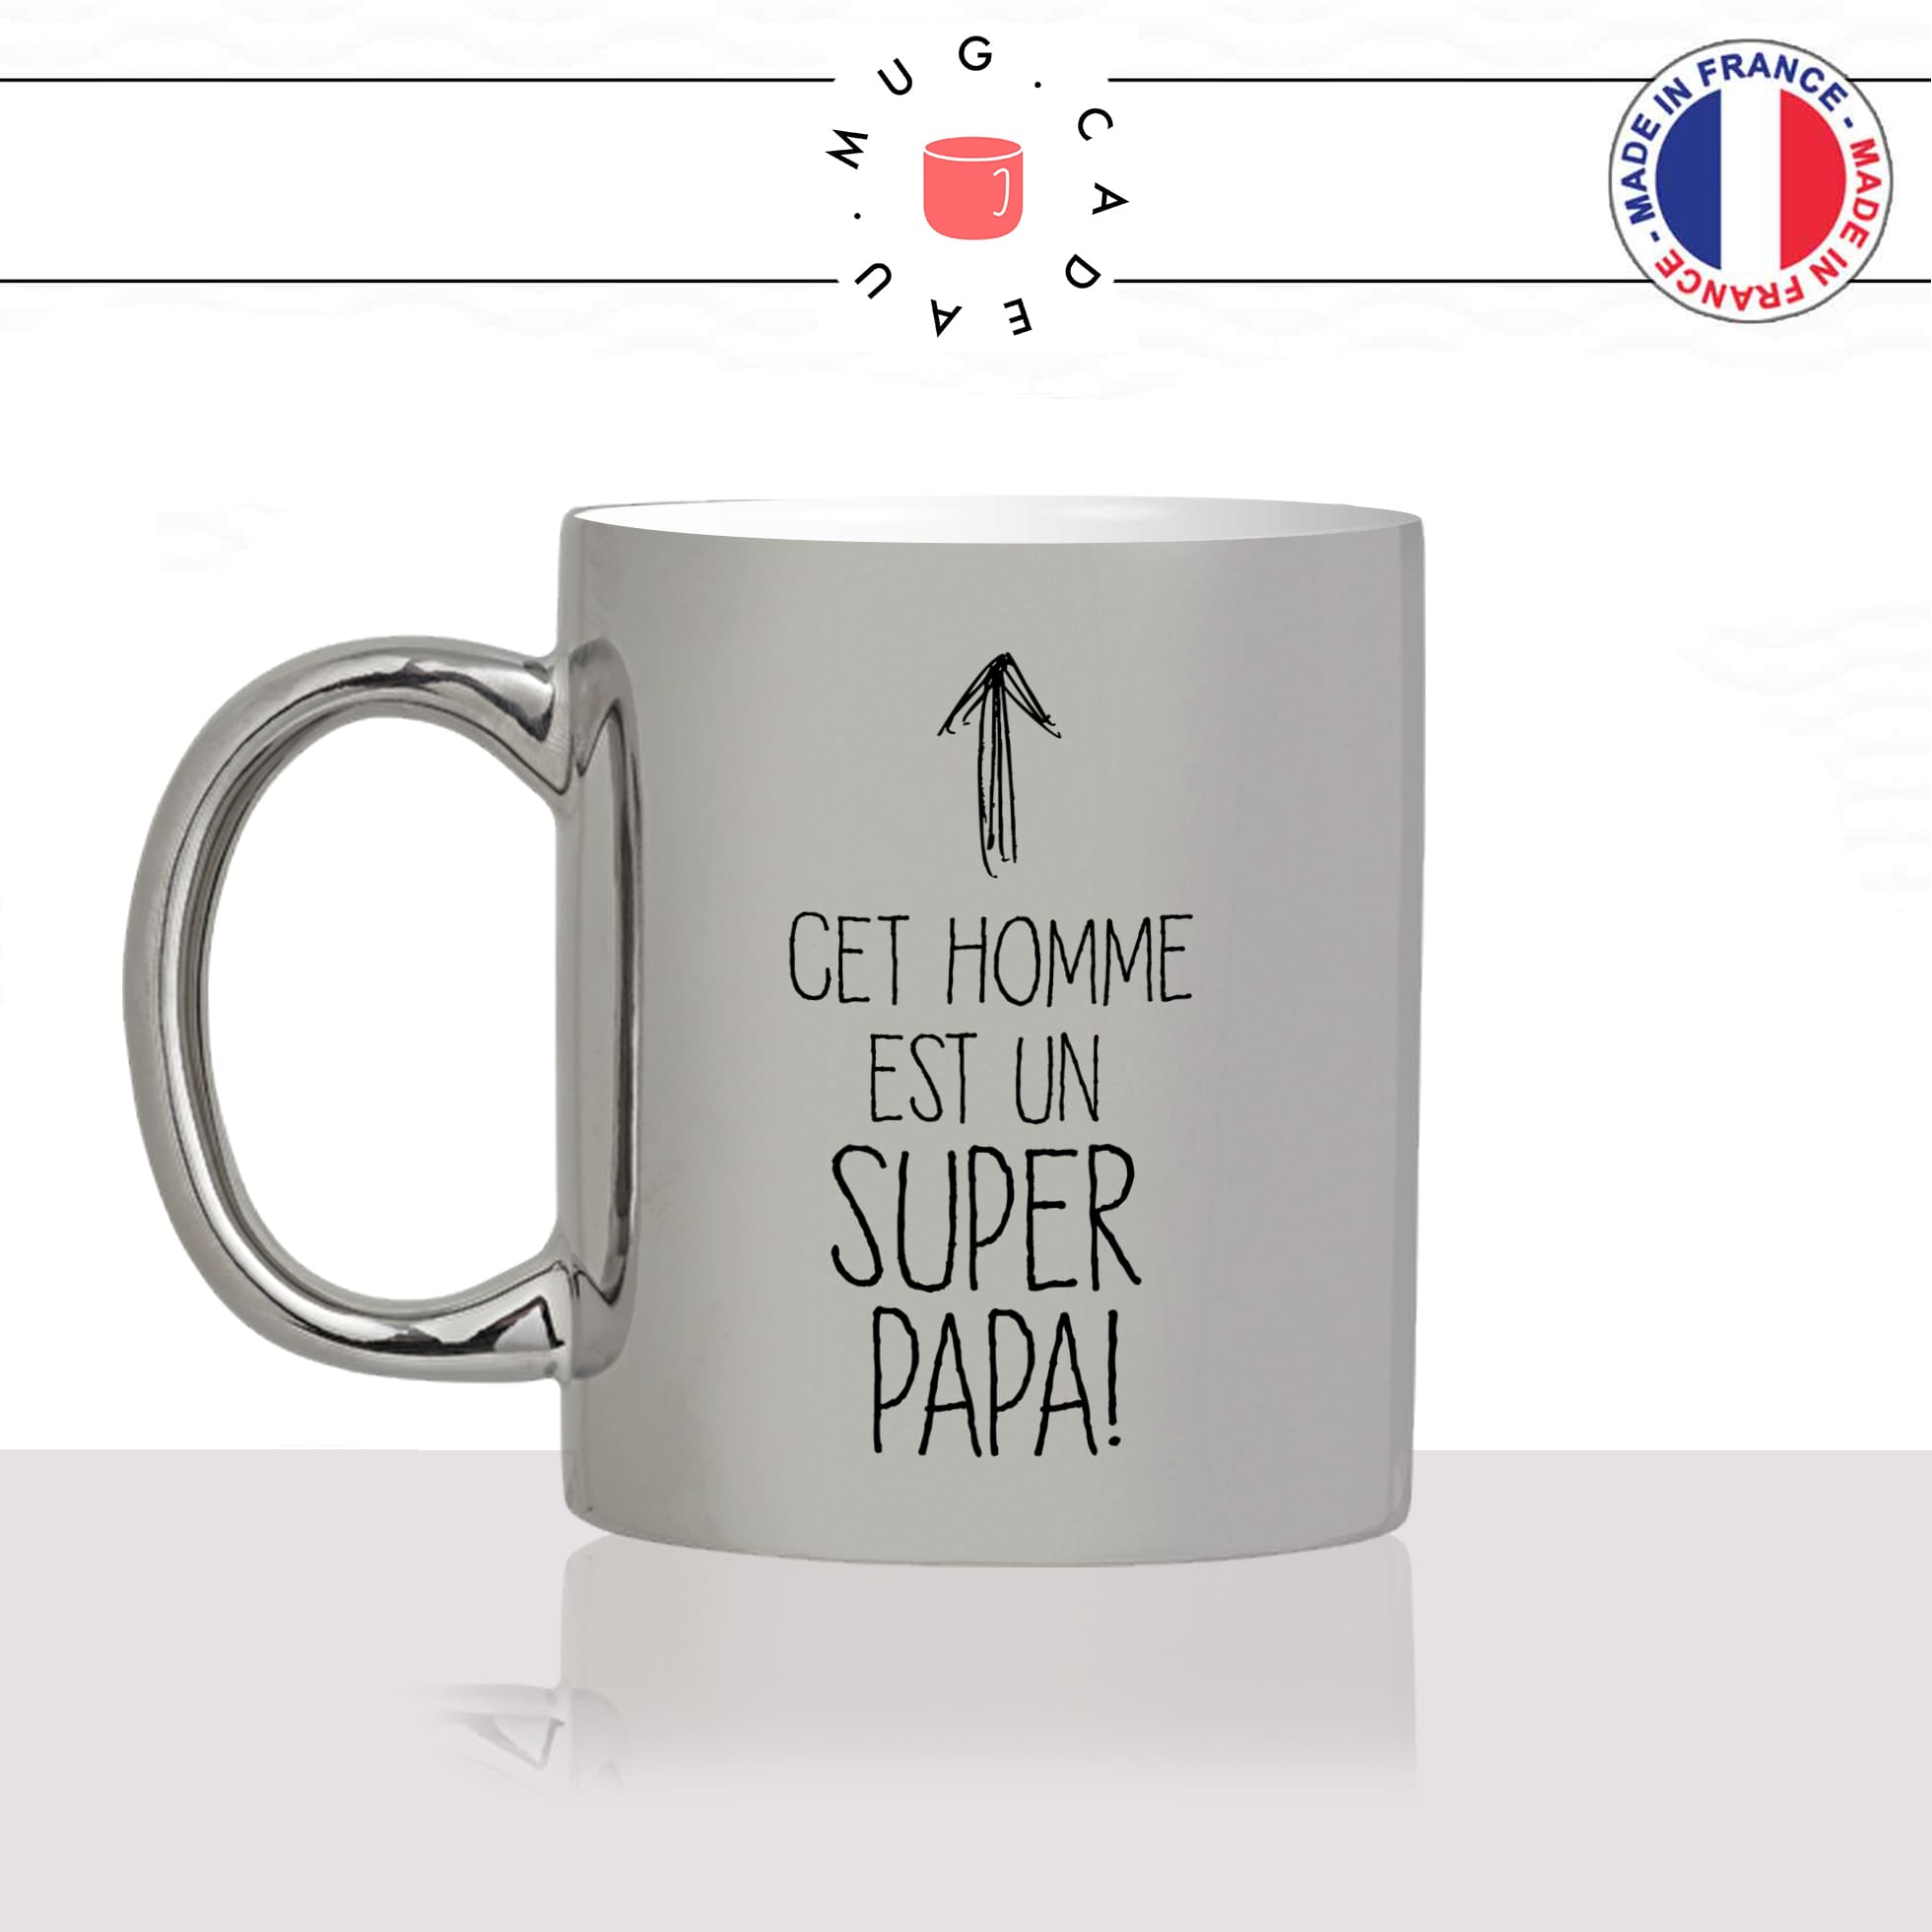 mug-tasse-argent-argenté-silver-fete-des-pères-cet-homme-est-un-super-papa-parent-famille-idée-cadeau-fun-cool-café-thé